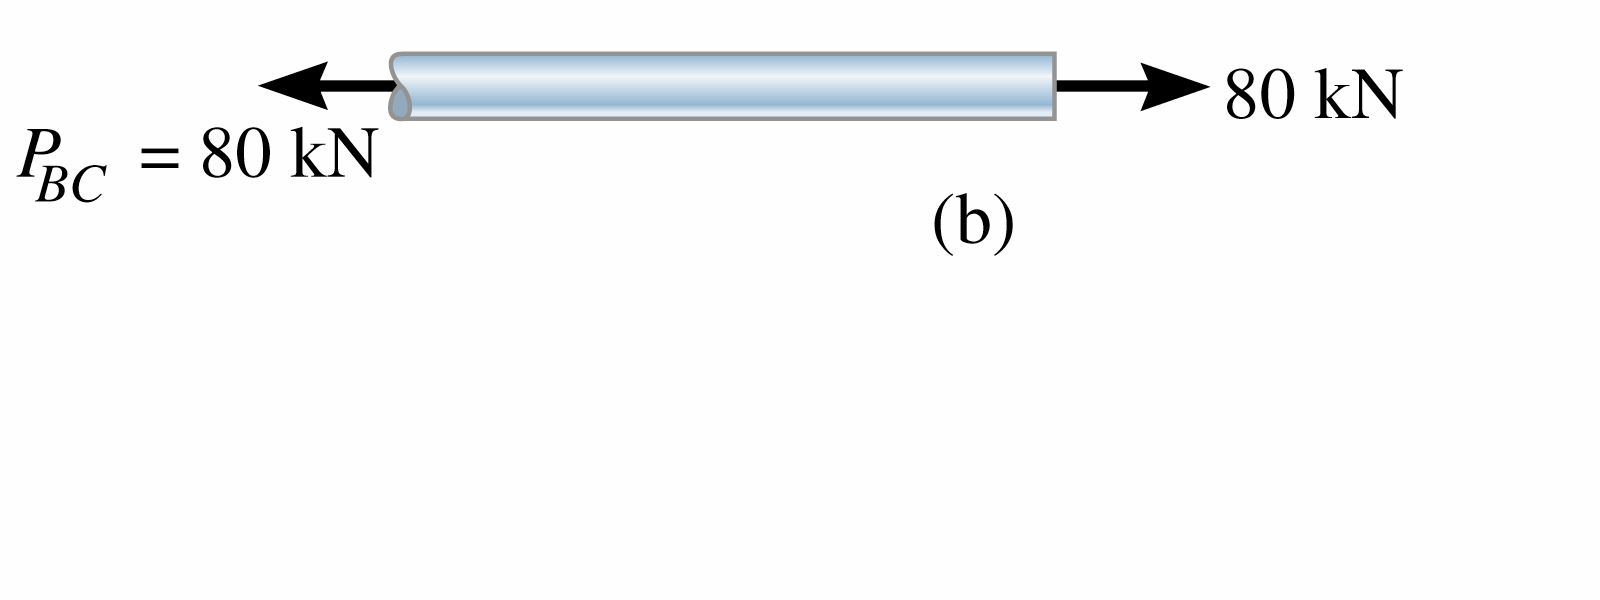 Solução do Exercício 1 O diagrama de corpo livre do tubo e da haste mostra que a haste está sujeita a uma tração de 80 kn e o tubo está sujeito a uma compressão de 80 kn.